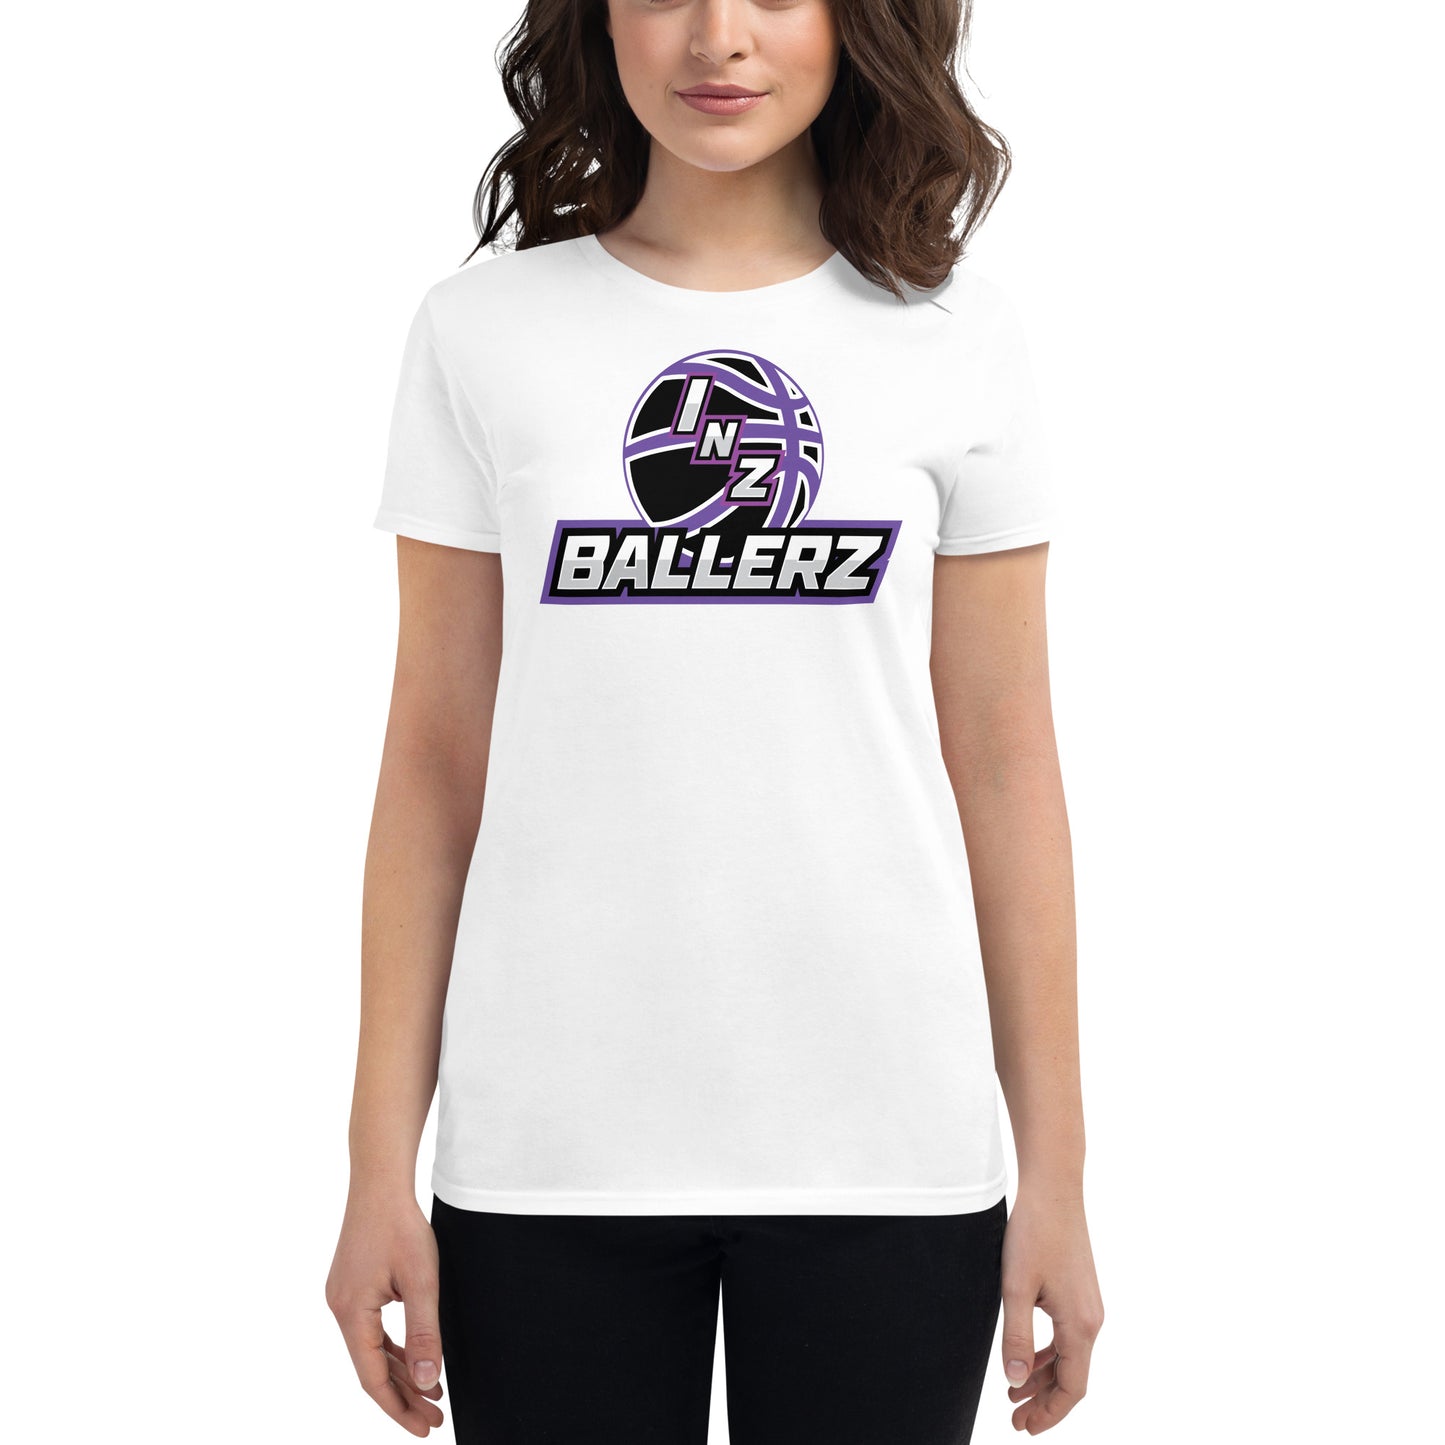 Women's INZ t-shirt (Premium Blend)